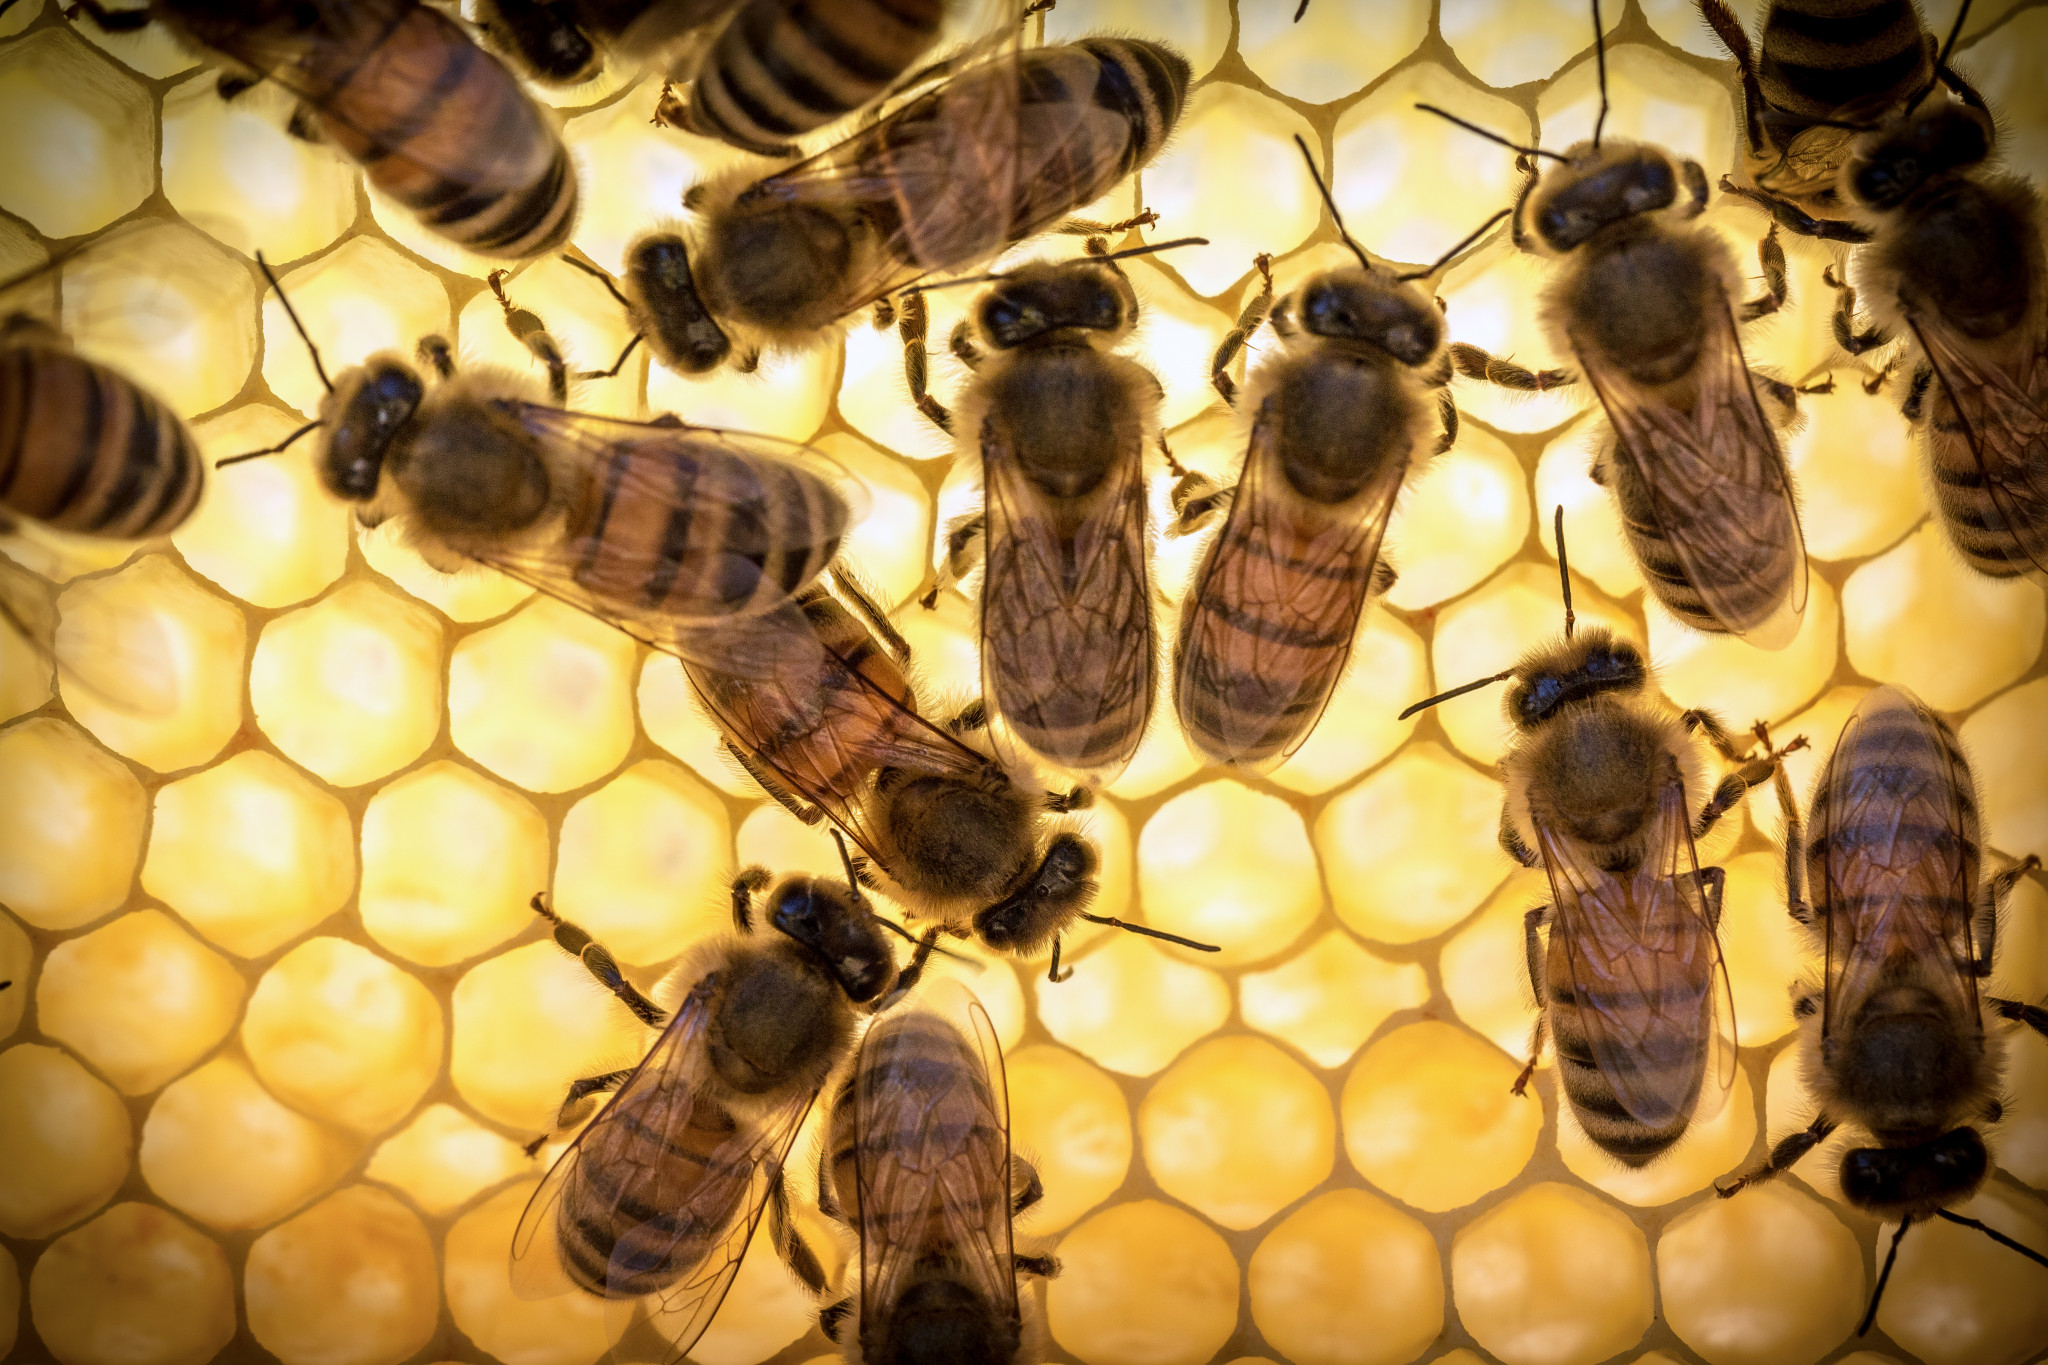 Το βασιλικό πολτό μέλισσας δεν συνιστάται να χρησιμοποιείται τη νύχτα, καθώς υπό την επιρροή του αυξάνει τη νευρική δραστηριότητα και την πιθανή αϋπνία